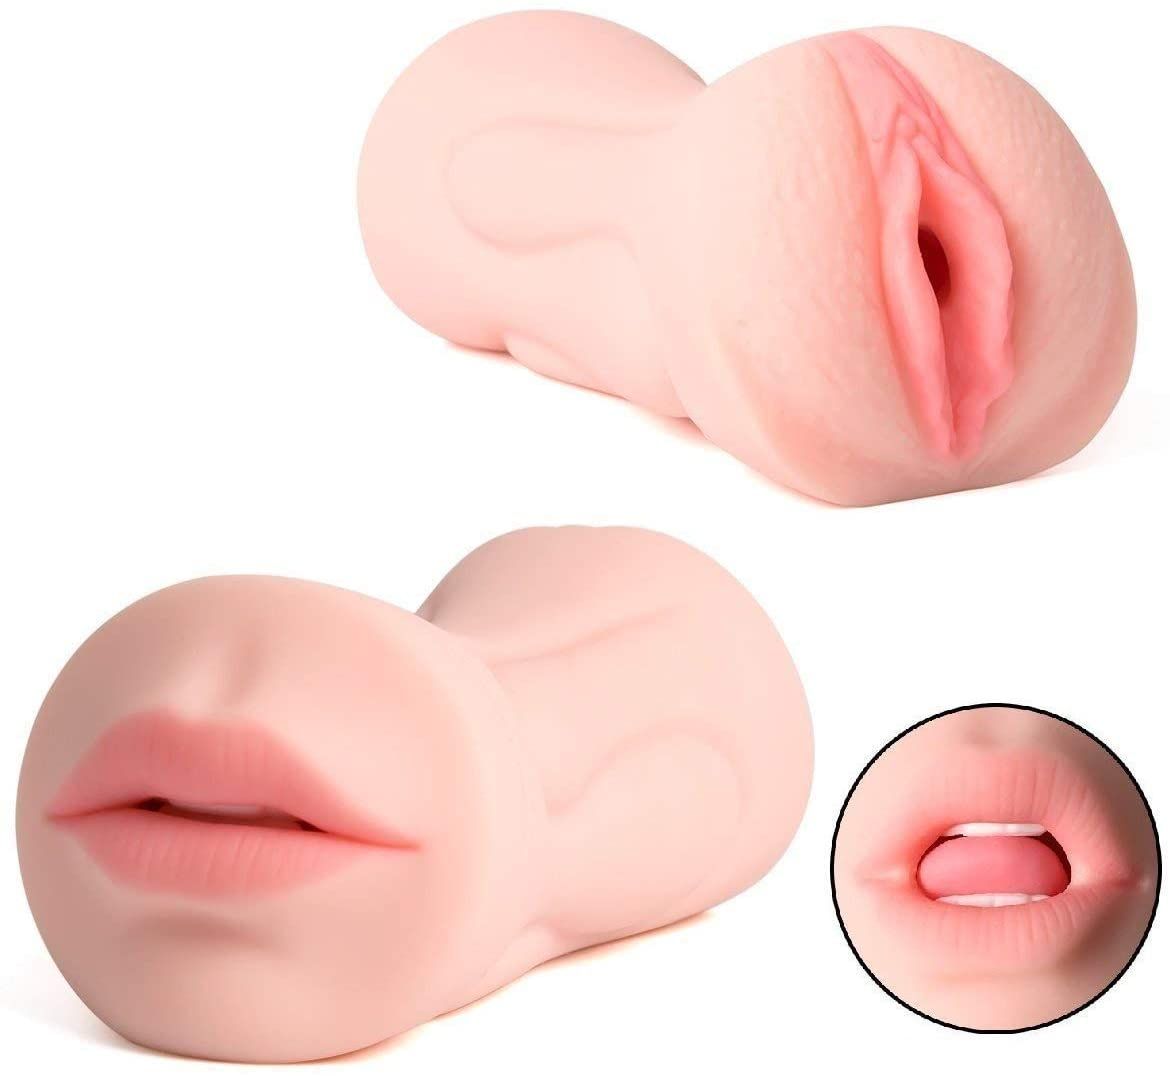 sex toys giochi erotici sex toys da comprare online sex toys vagina pene sex toys giochi erotici sex toys da comprare online sex toys